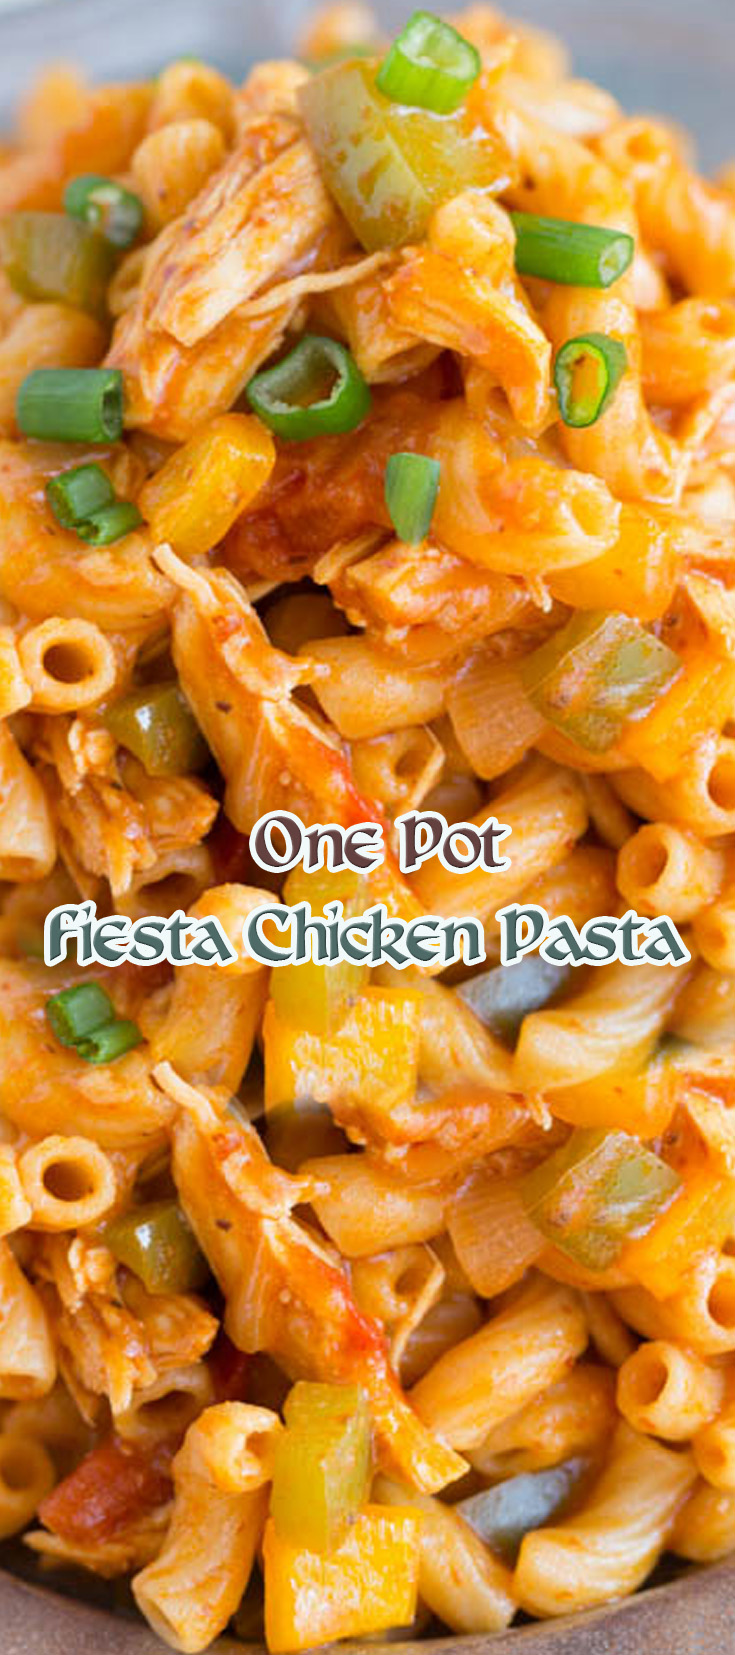 One Pot Fiesta Chicken Pasta